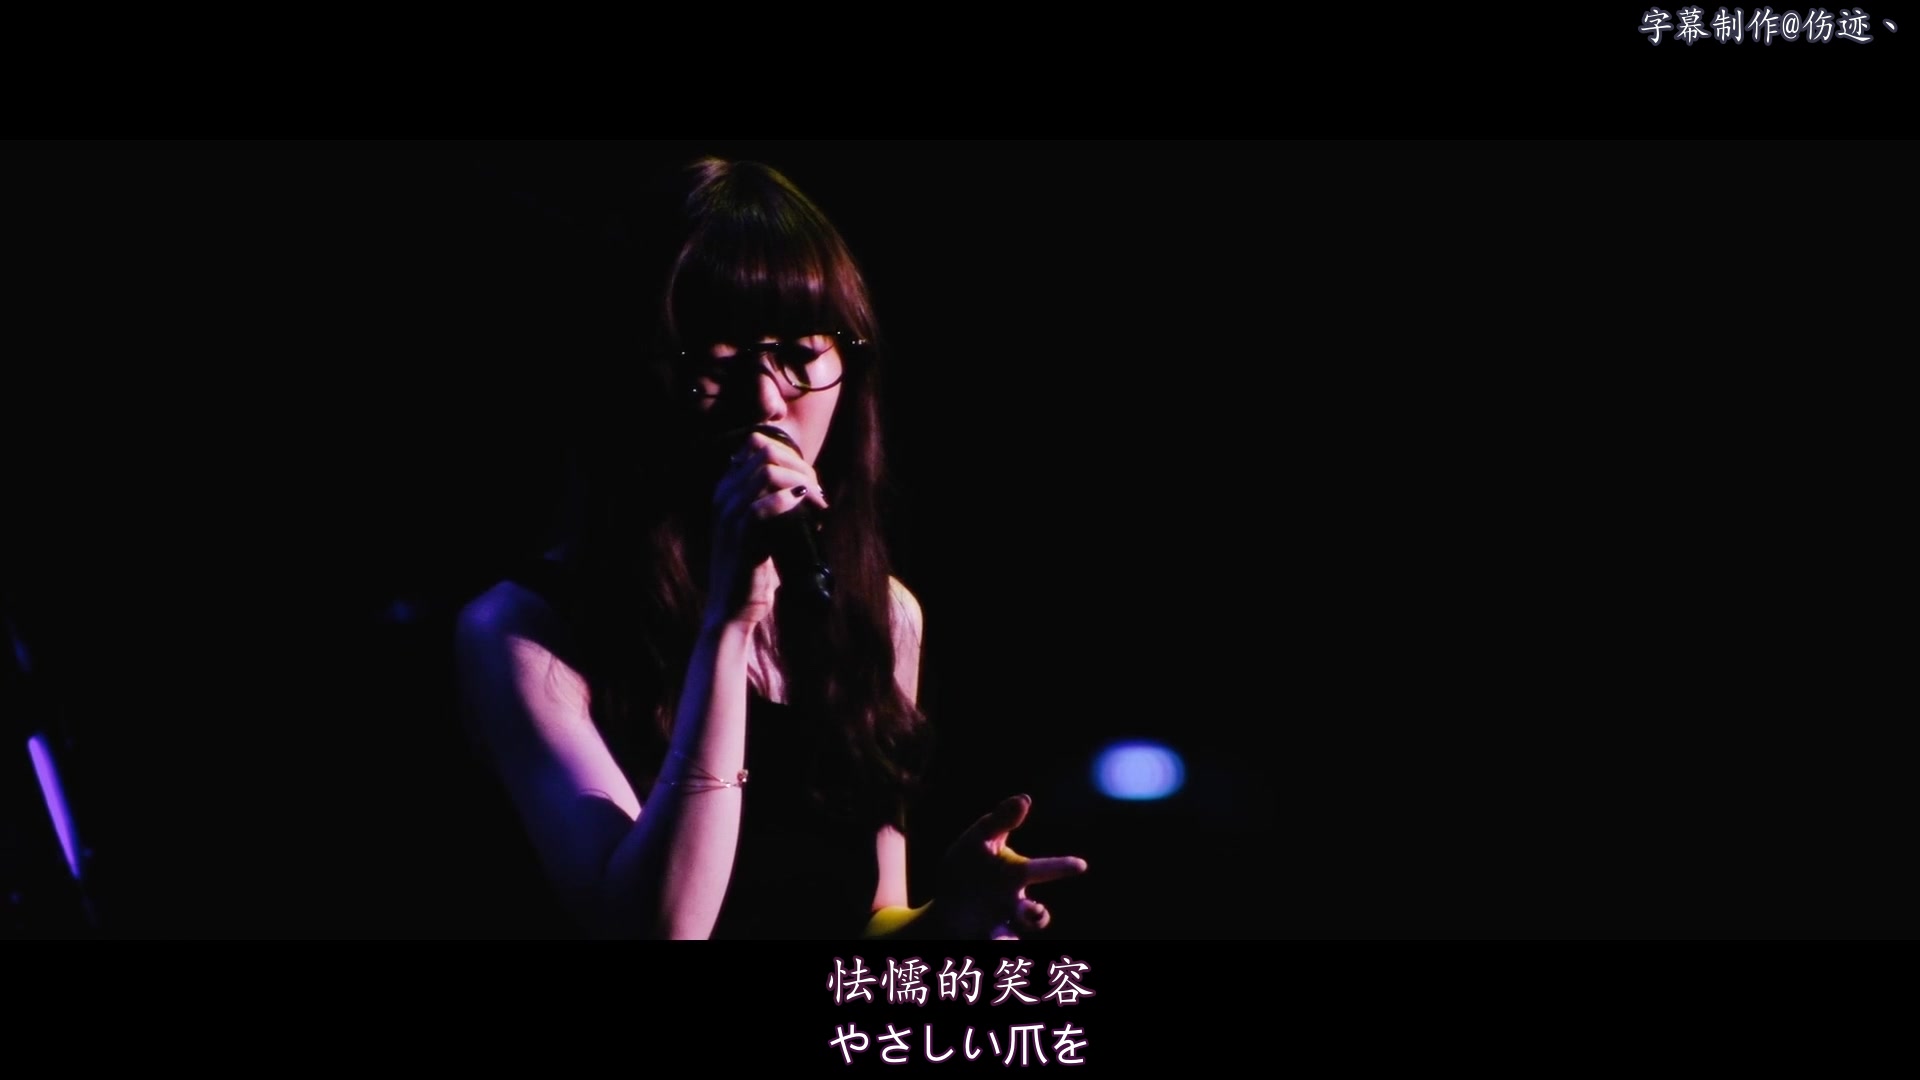 [图]Live《花の呗》花之歌-Aimer 中日字幕 命运之夜剧场版主题曲